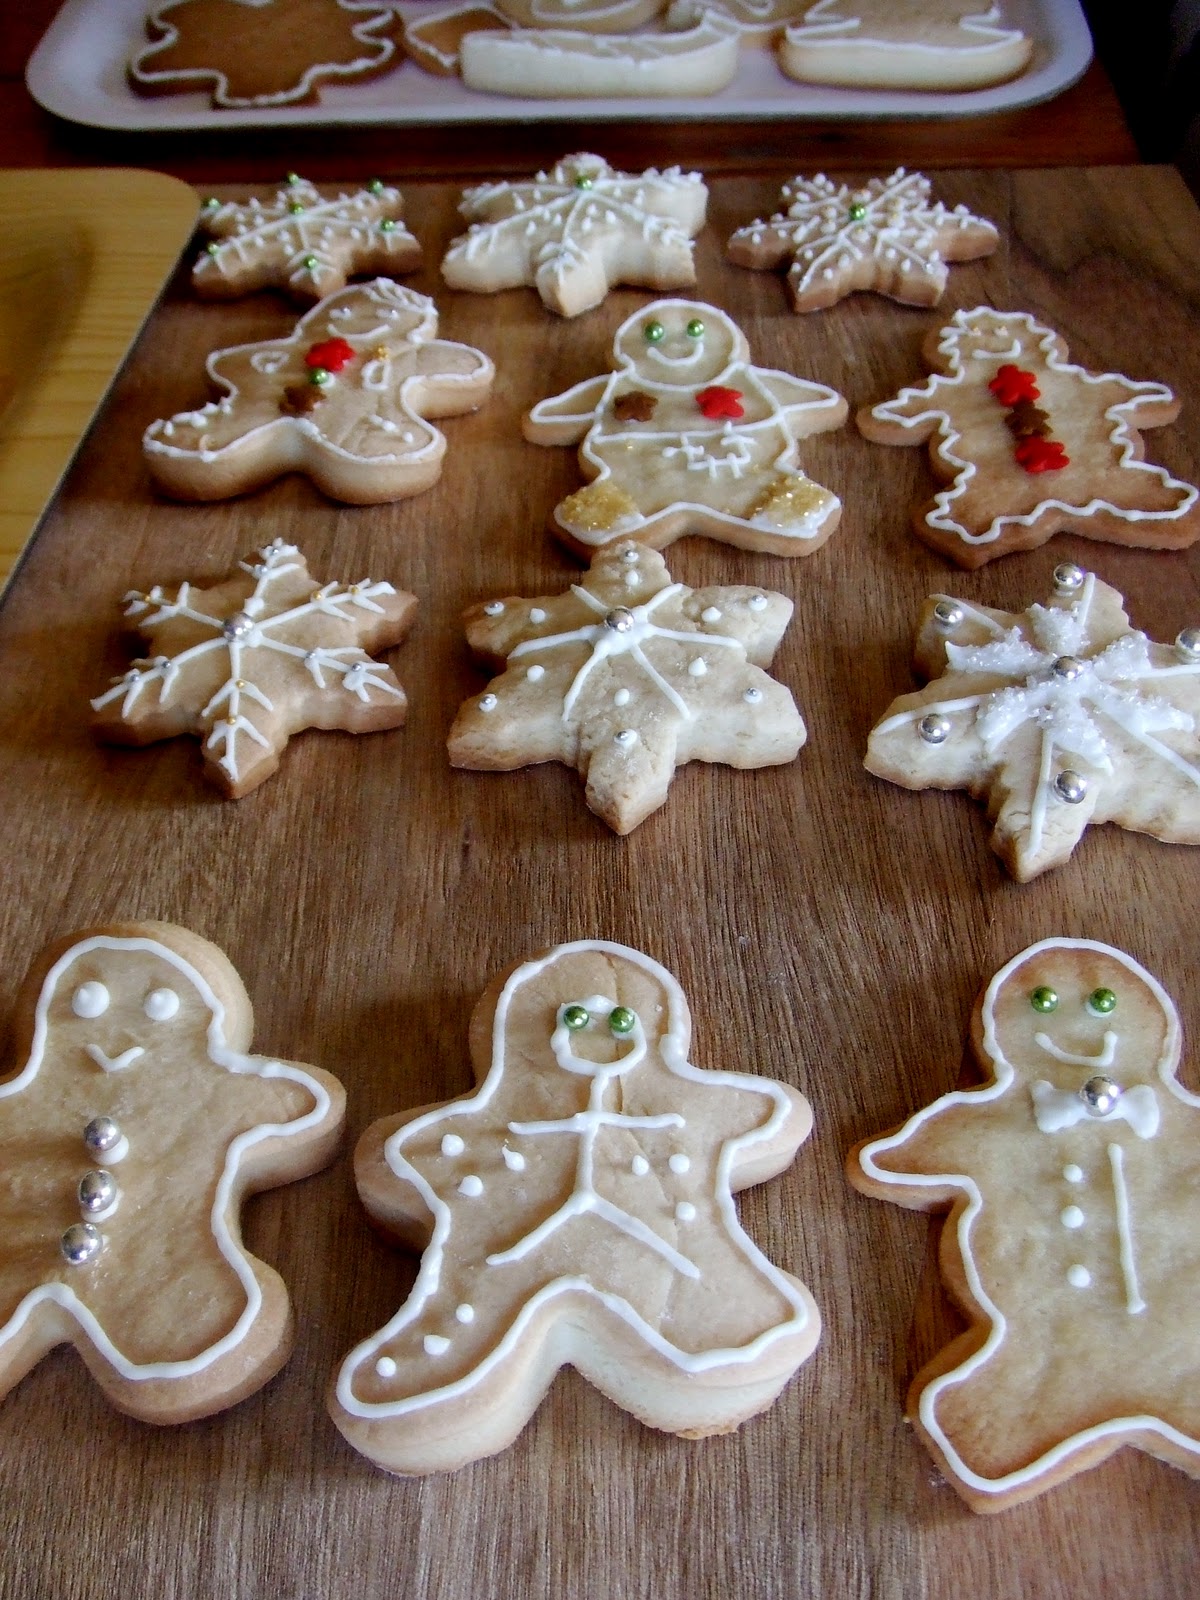 Glasa real y cómo decorar galletas